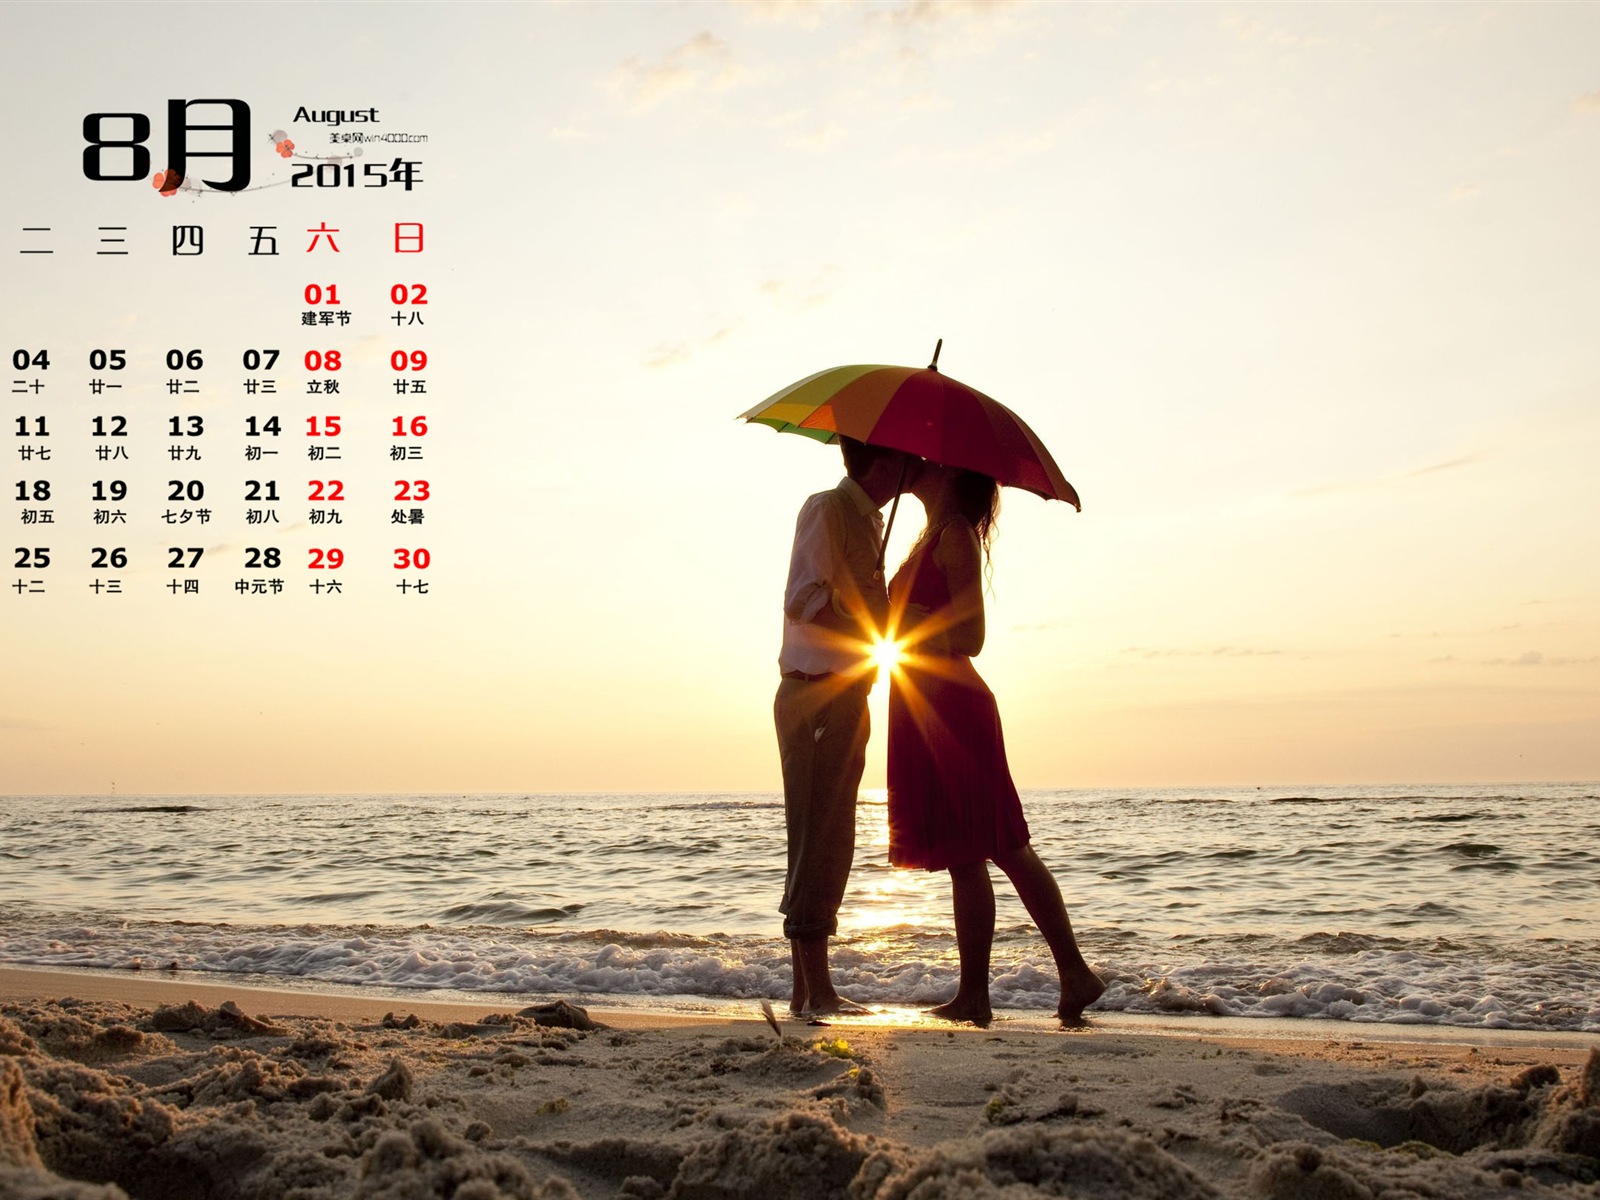 August 2015 calendar wallpaper (1) #14 - 1600x1200